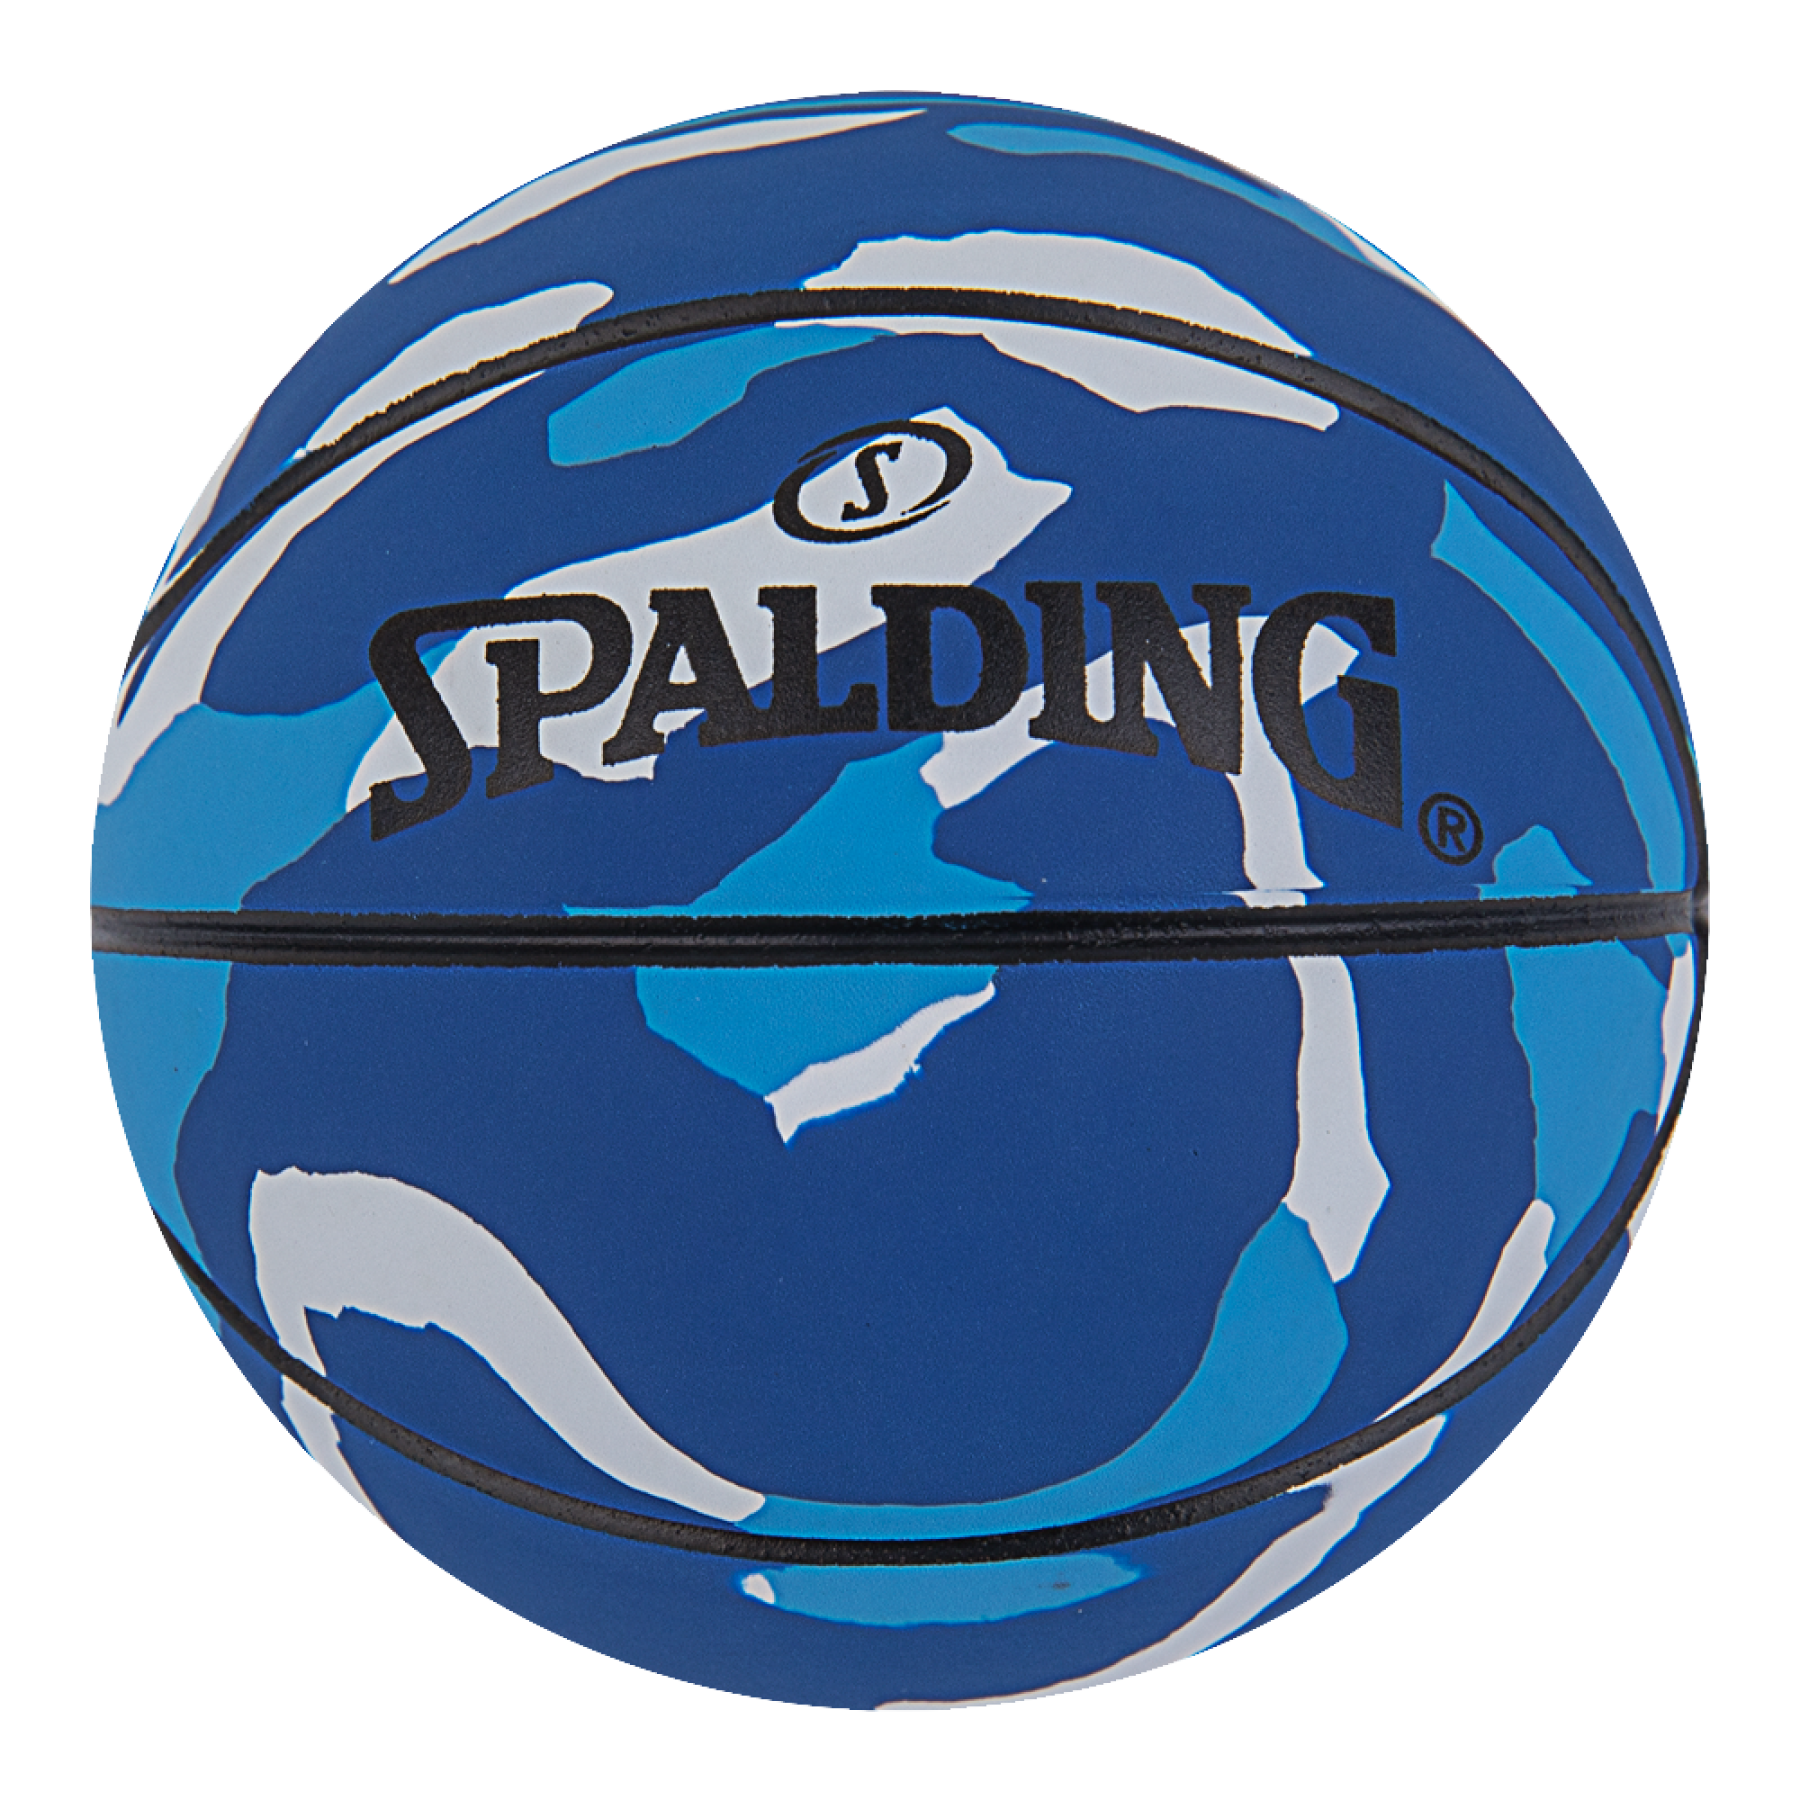 Ballong Spalding Spaldeen